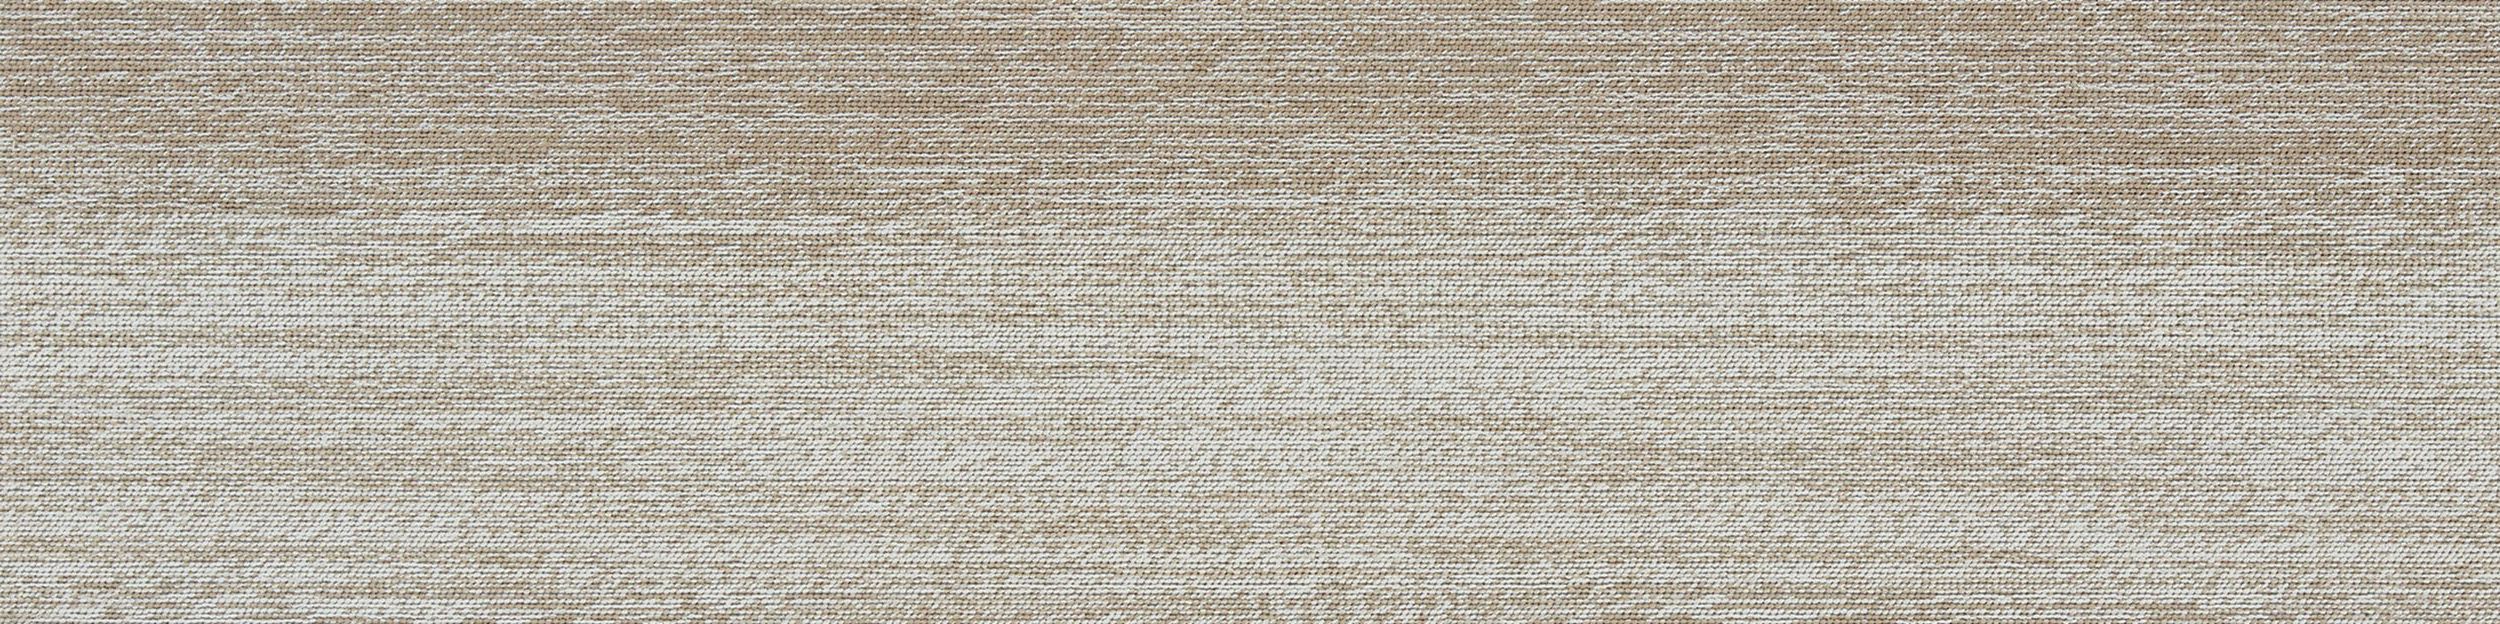 Touch of Timber Carpet Tile in Oak afbeeldingnummer 2